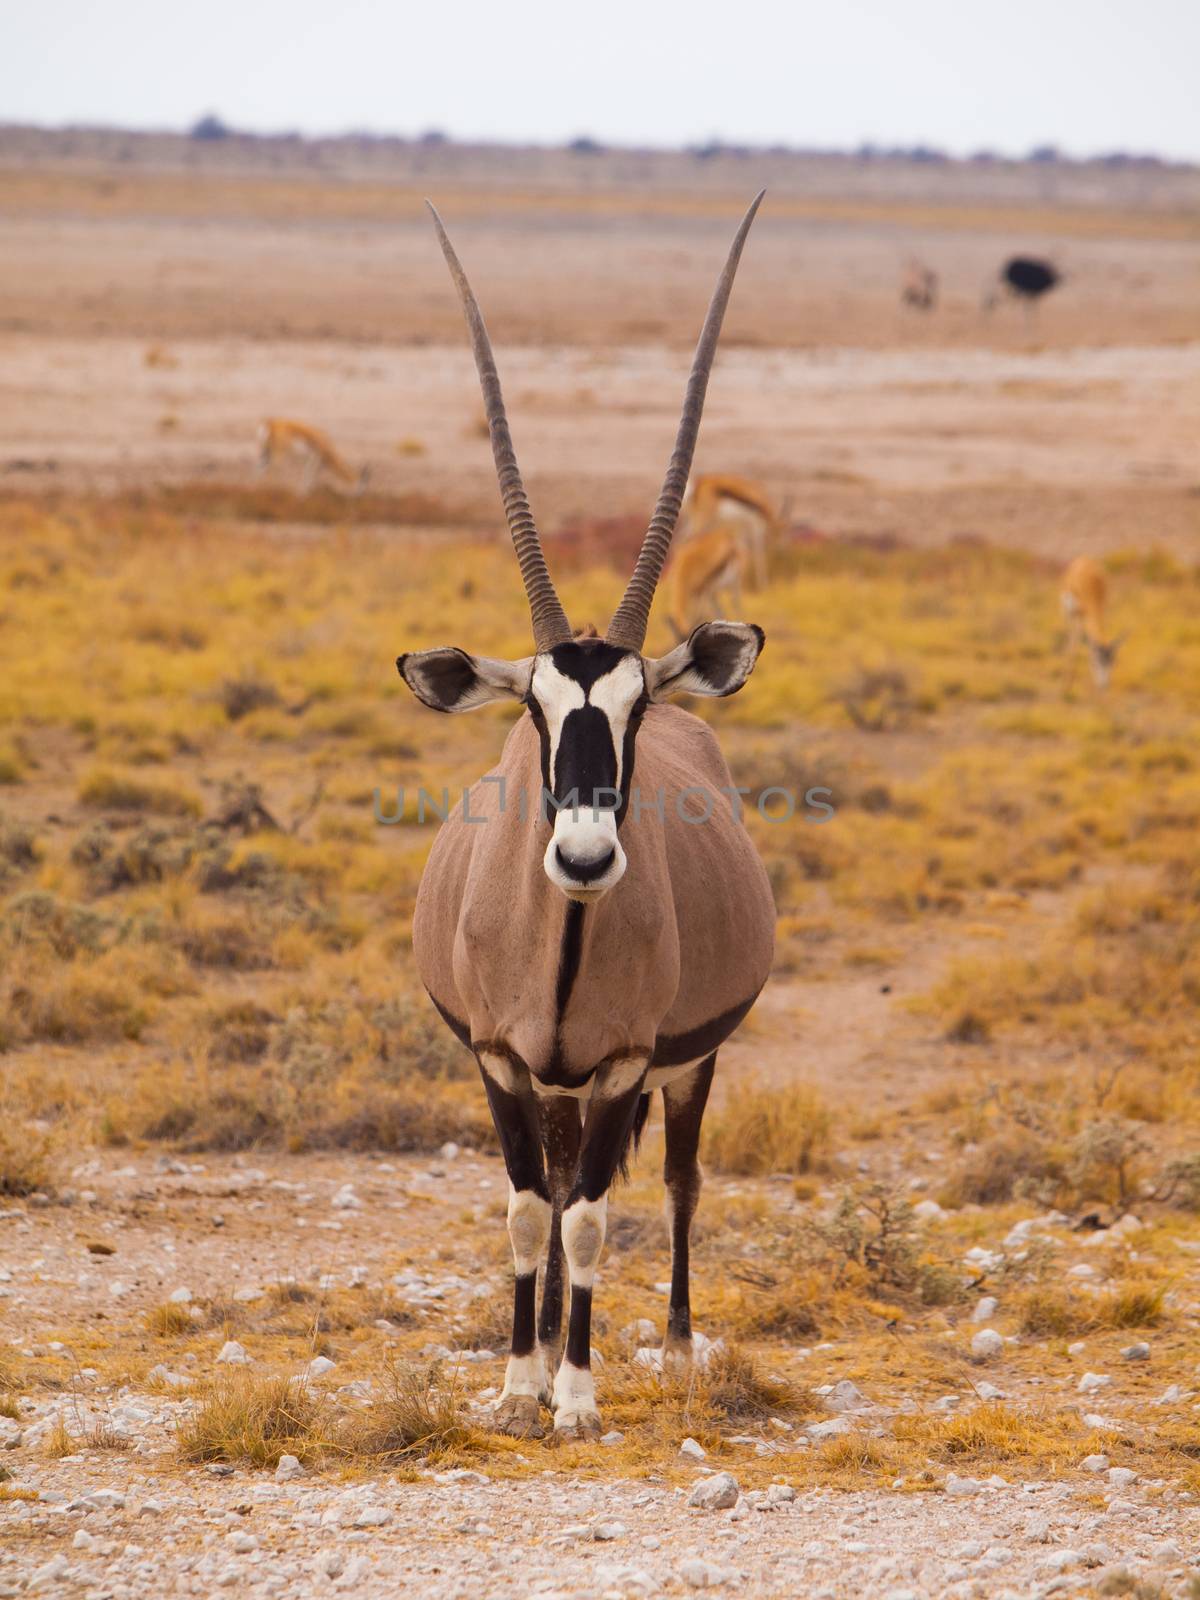 Front view of oryx antelope (Oryx gazella)